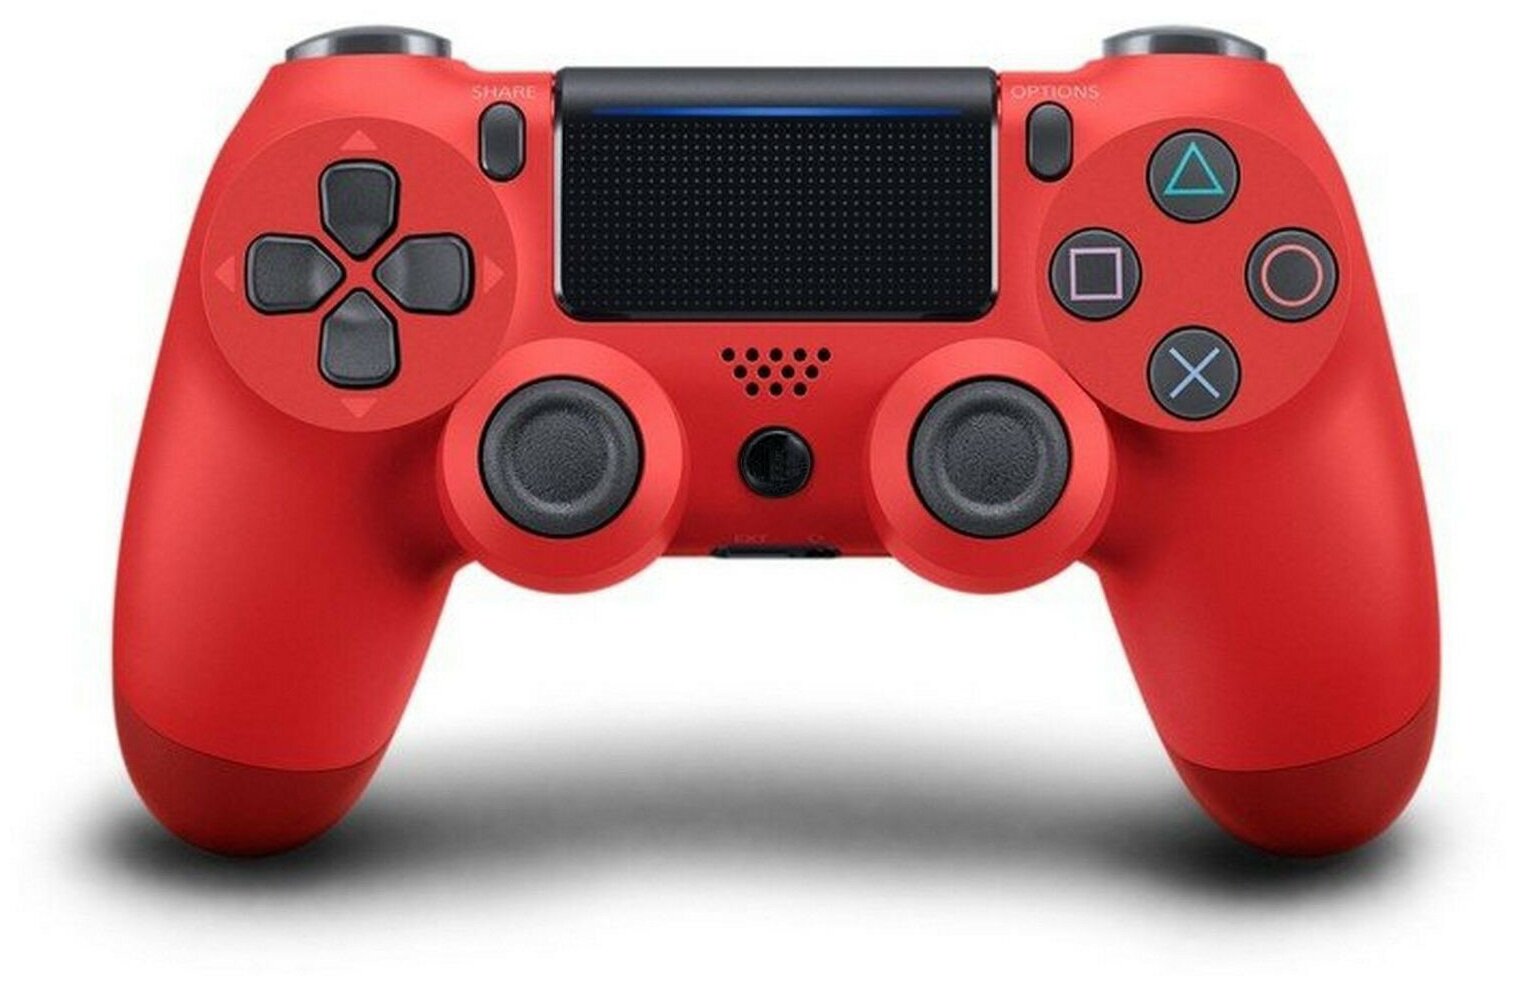 Беспроводной Bluetooth геймпад для PlayStation 4. Джойстик совместимый с PS4, PC, Mac, Android, красный